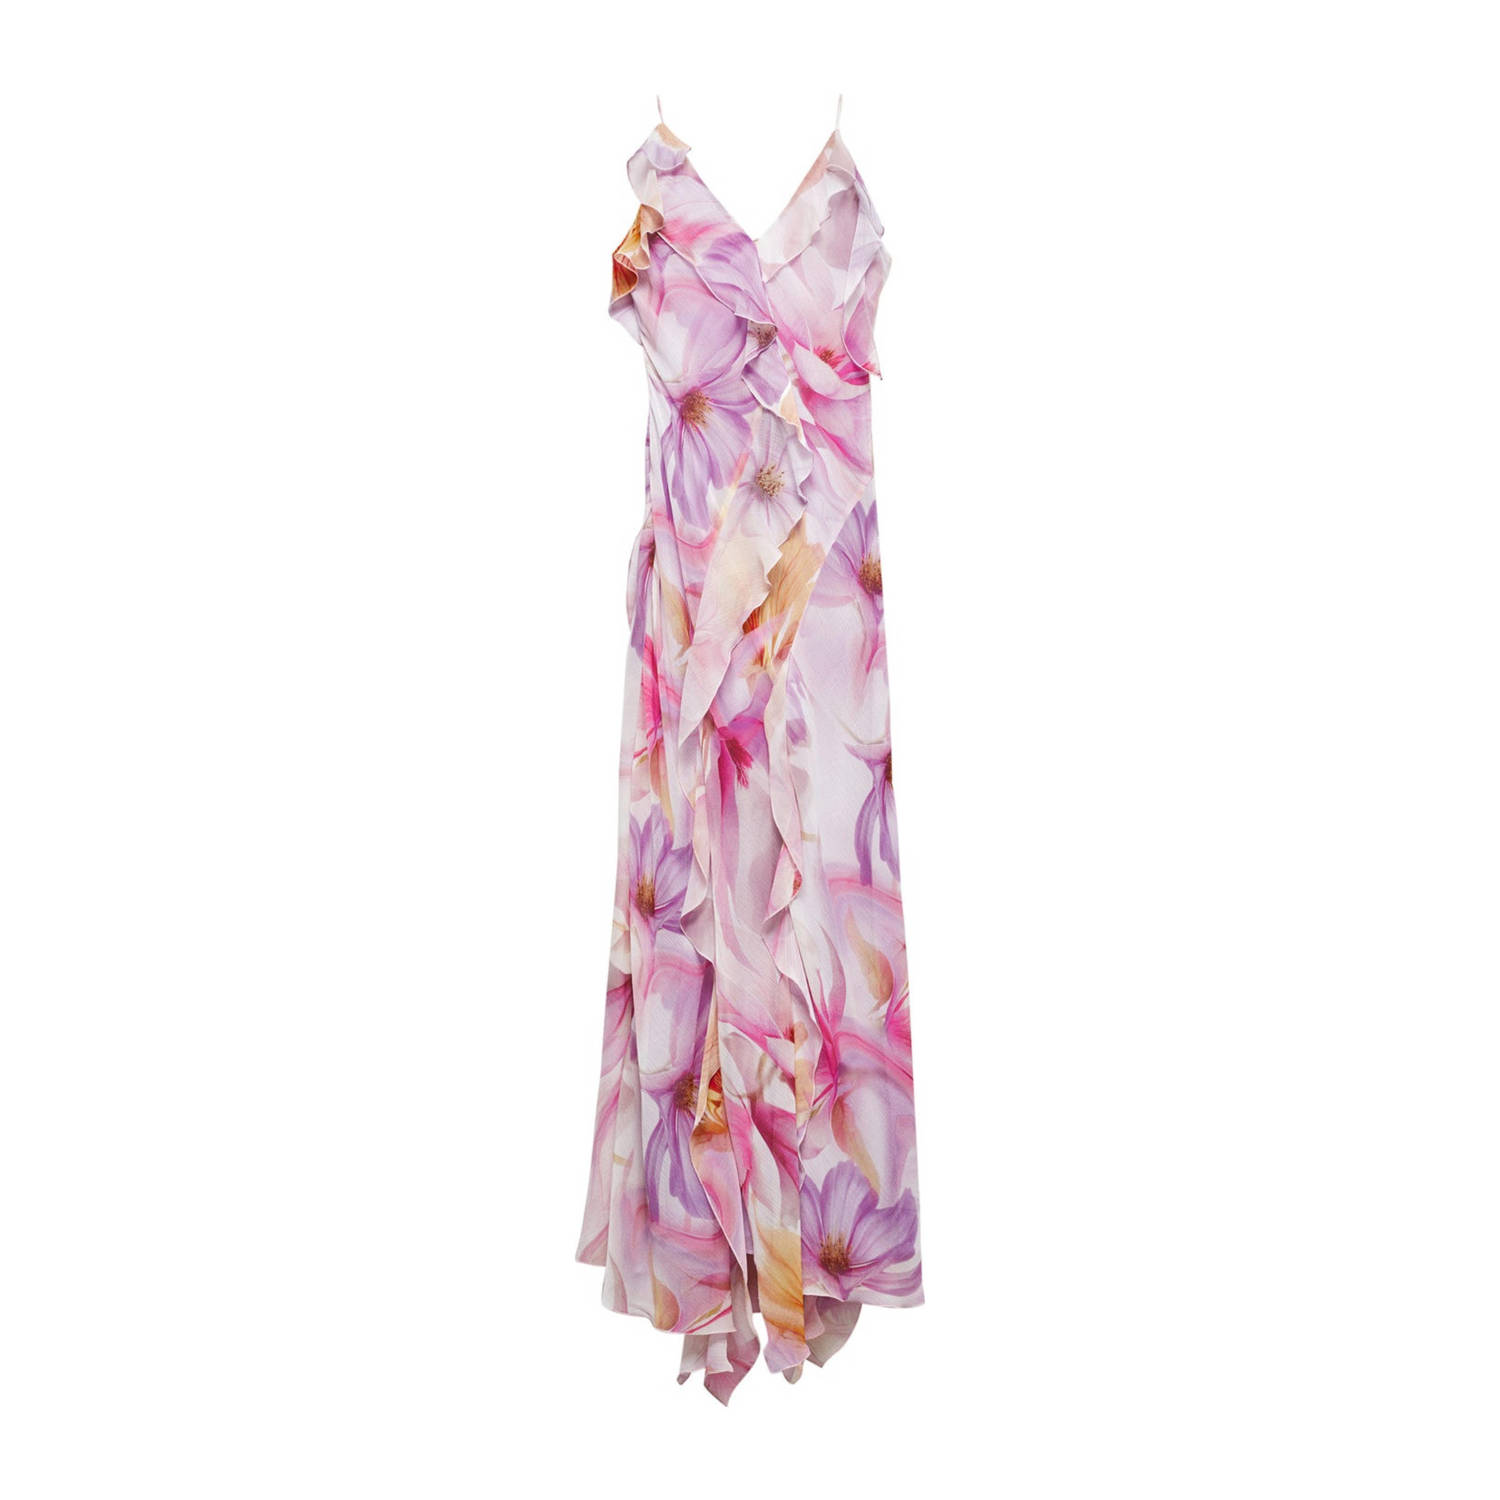 Mango gebloemde maxi jurk met open rug paars roze ecru